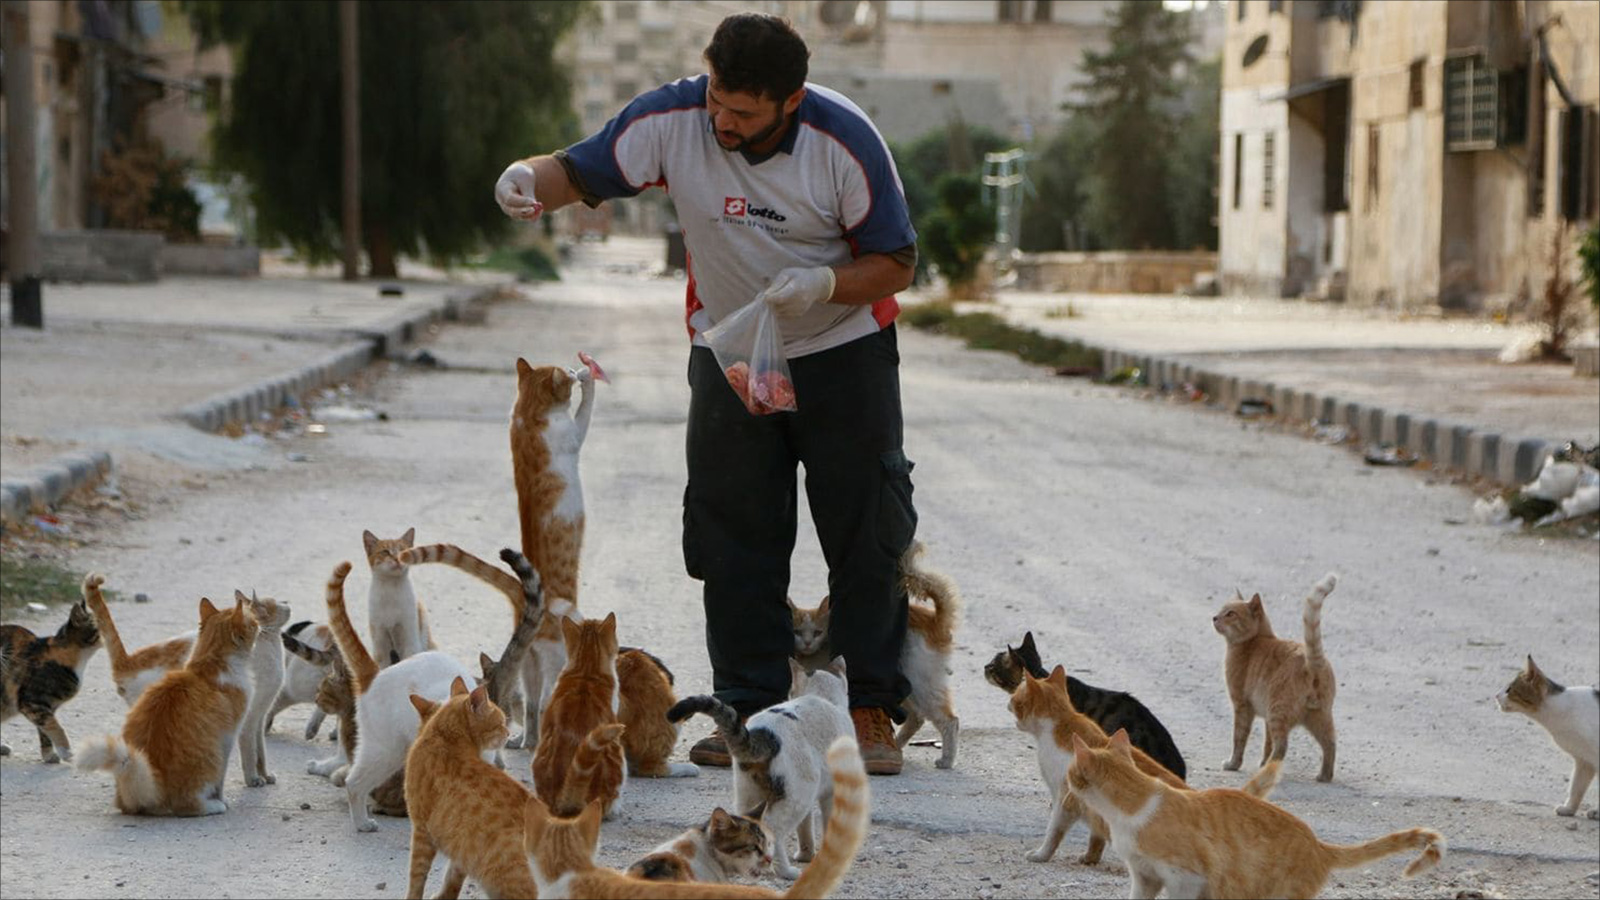 علاء سائق سيارة إسعاف يحرص يوميا على تغذية 150 قطا بما تيسر له من لحم(الصحافة الأميركية)